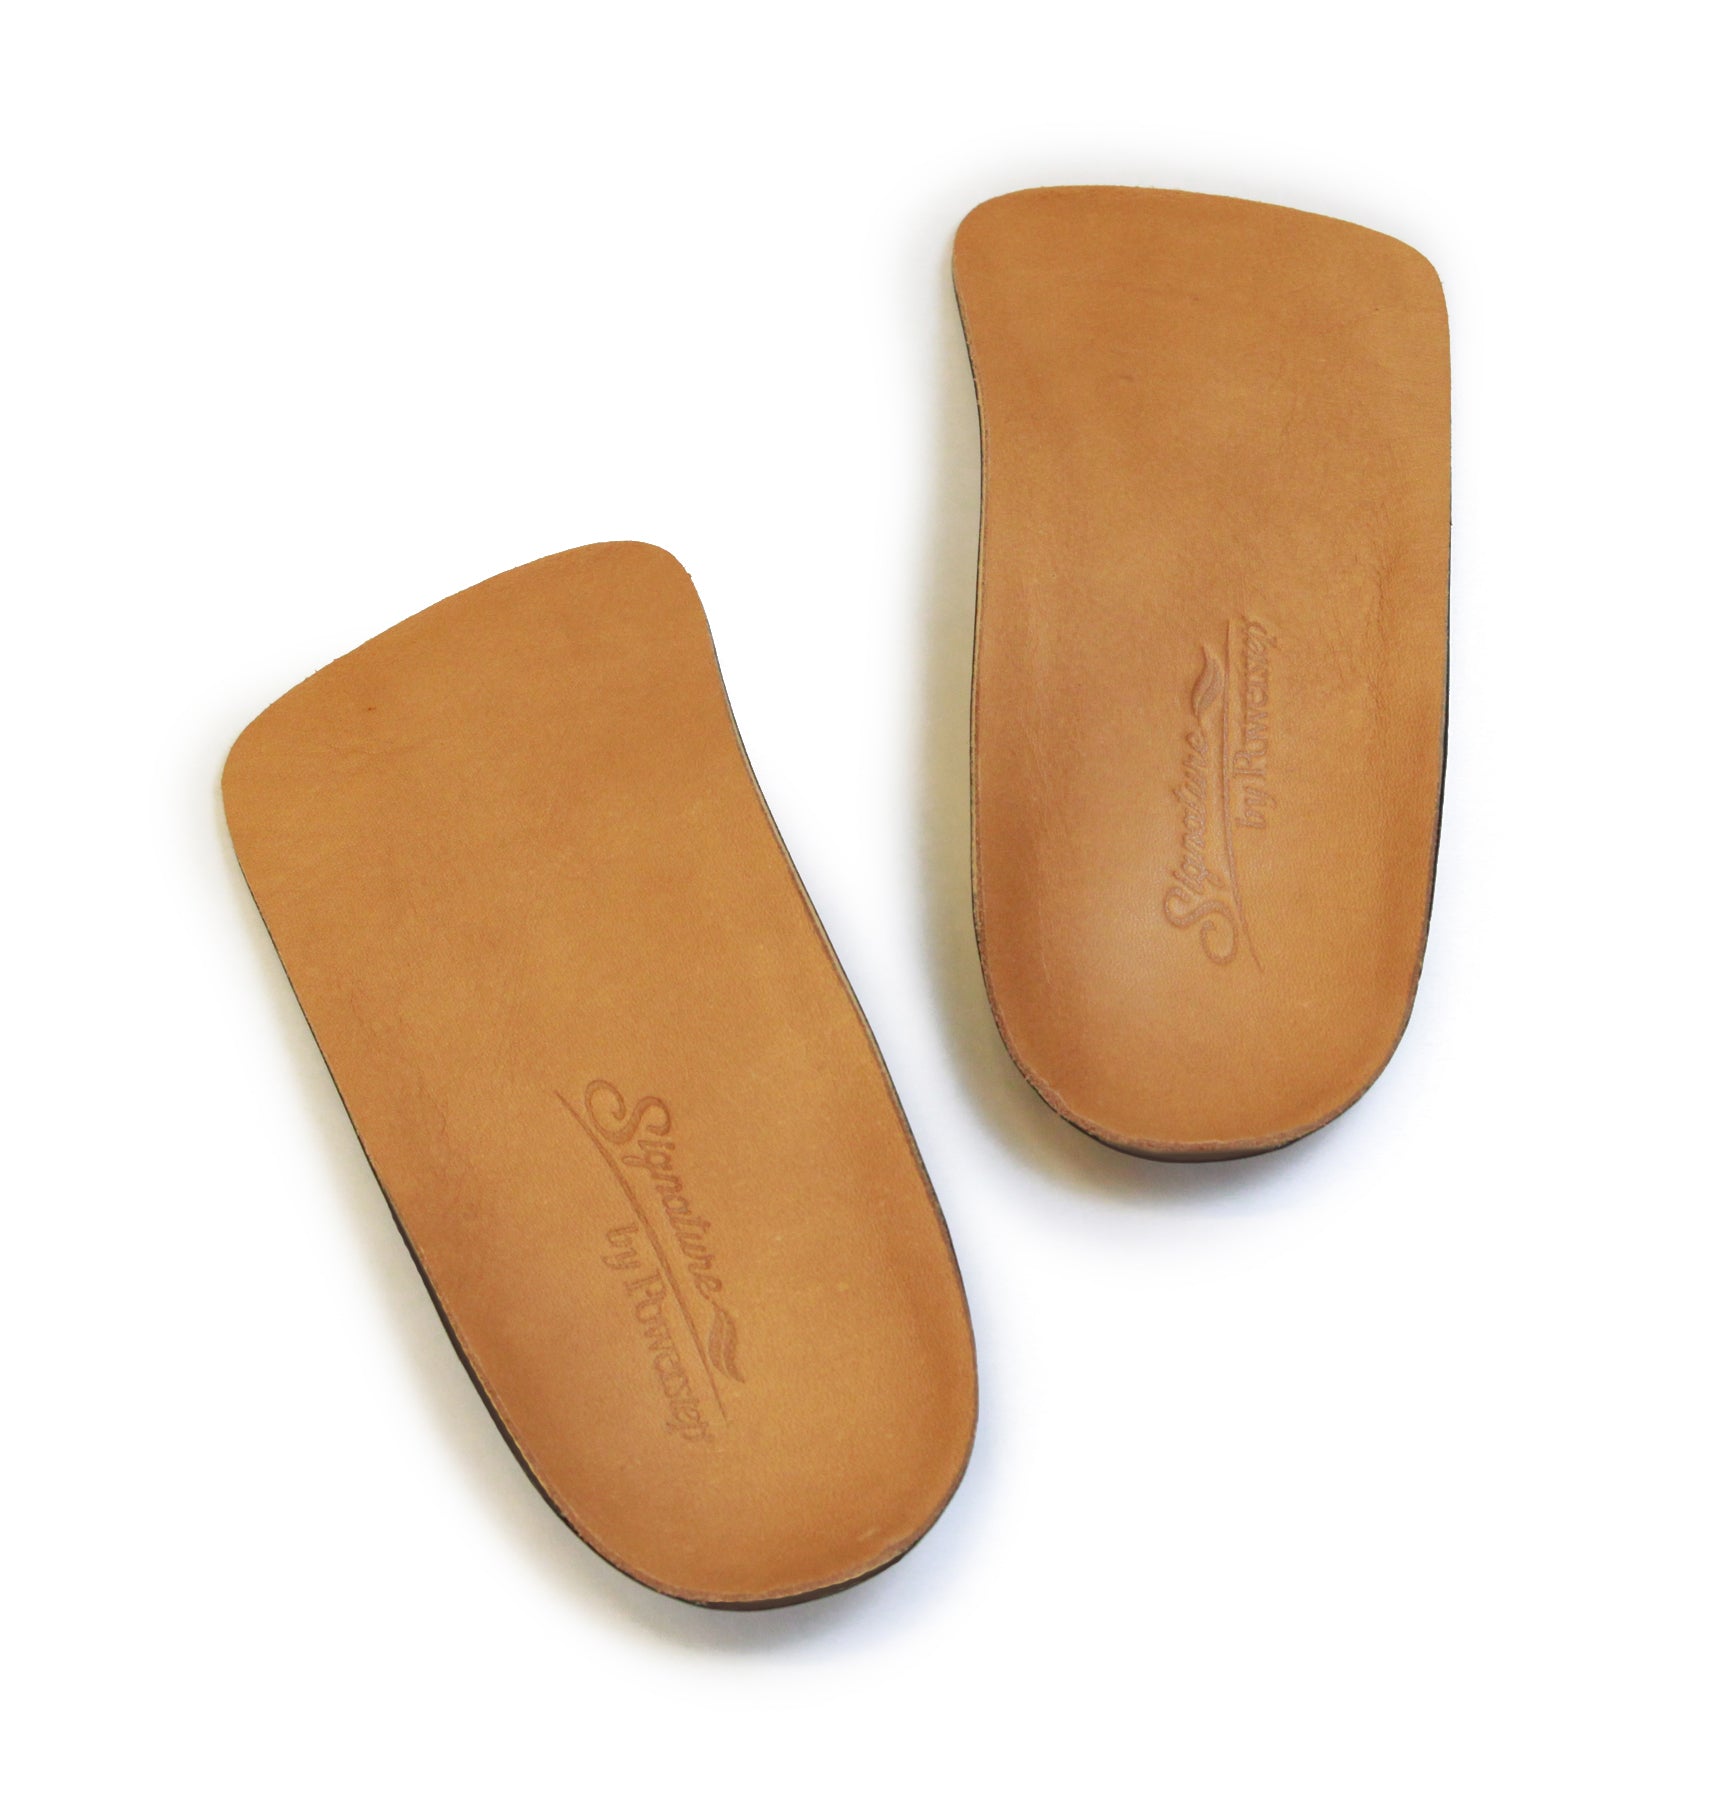 Spenco Supreme Slippers for Women, TheInsoleStore.com